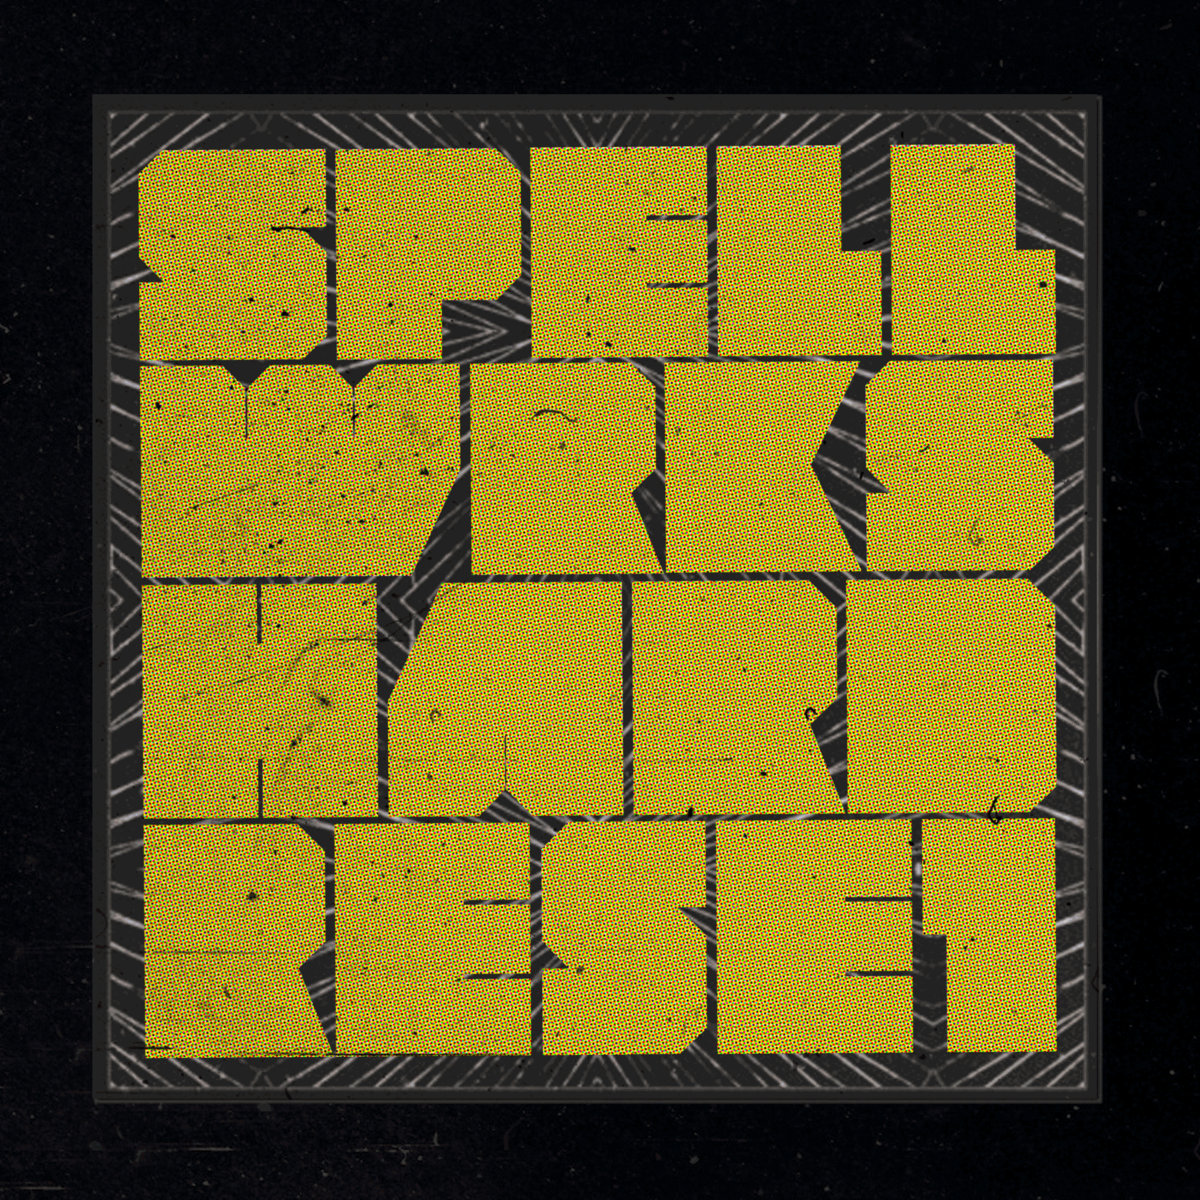 Spellwrks - "Hard Reset" (Release)